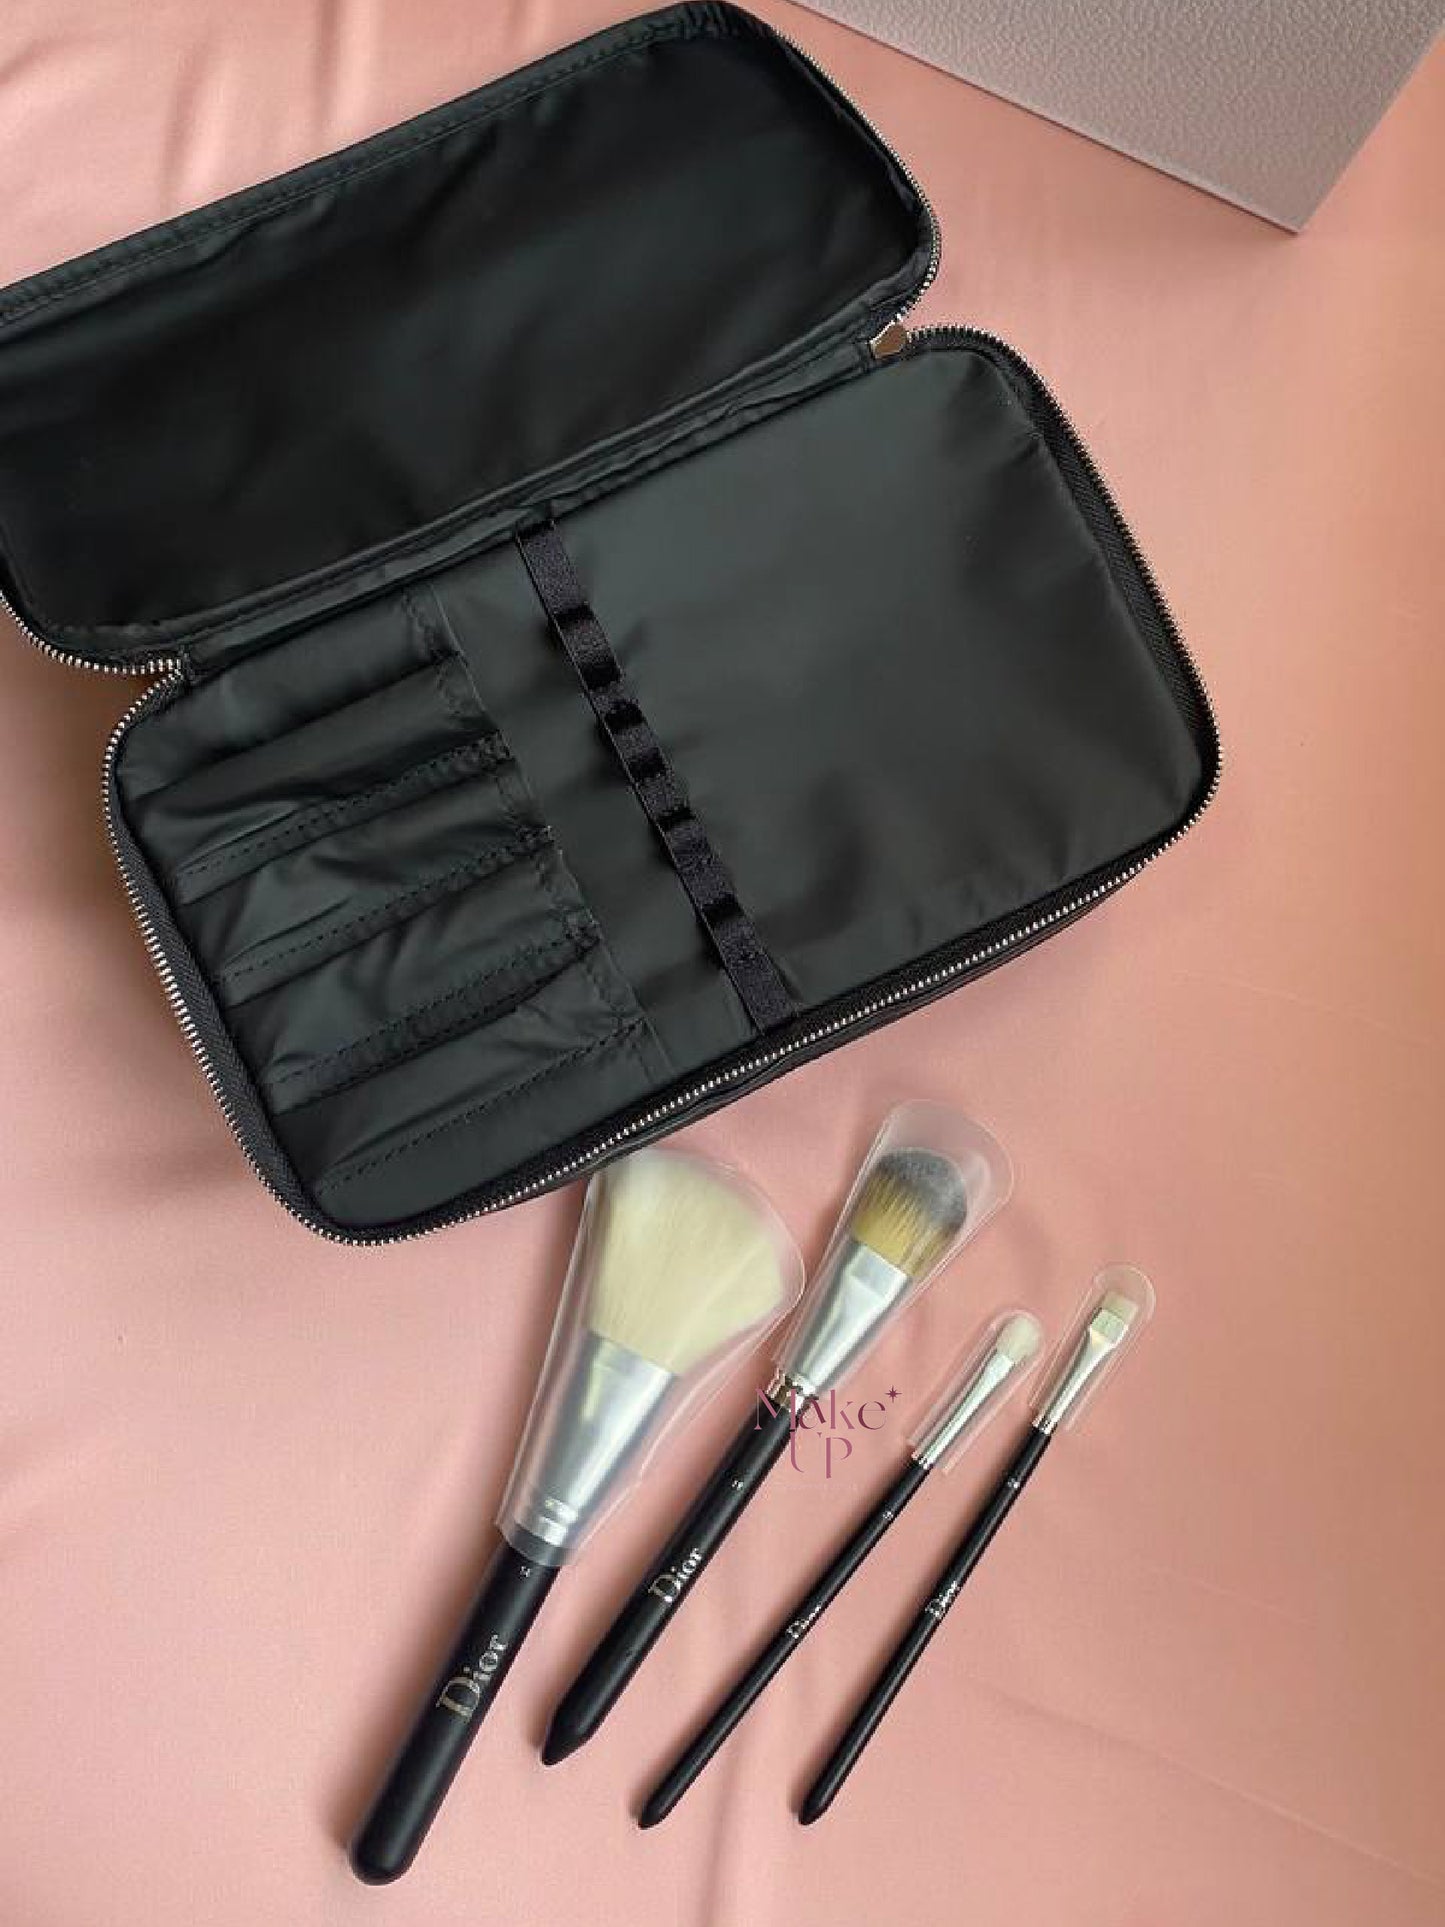 Dior Makeup Bag with 4 Makeup Brush